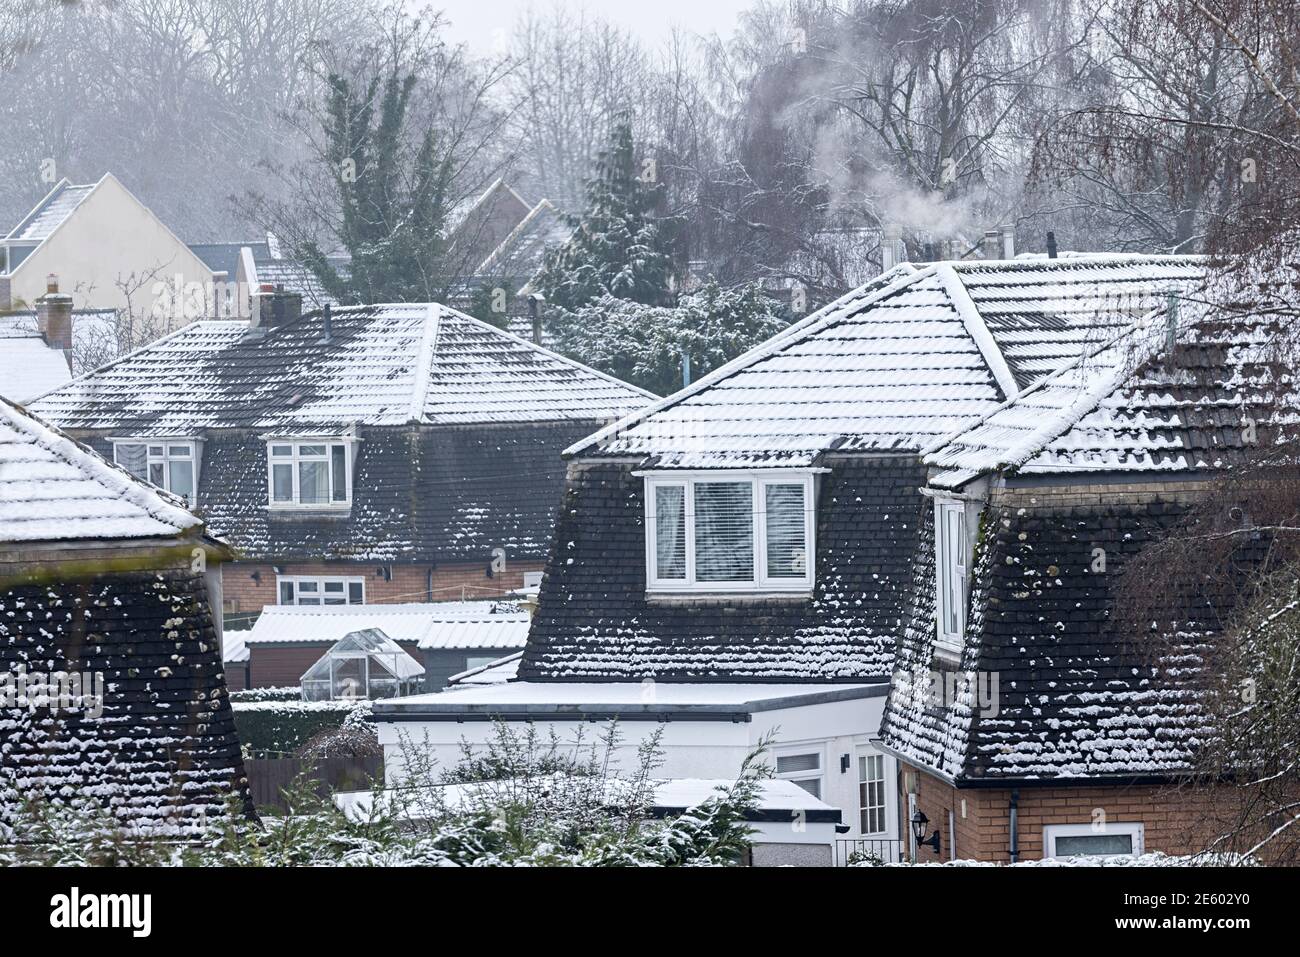 Neige sur les toits du village avec fumée de cheminée, Llanfoist, pays de Galles, Royaume-Uni Banque D'Images